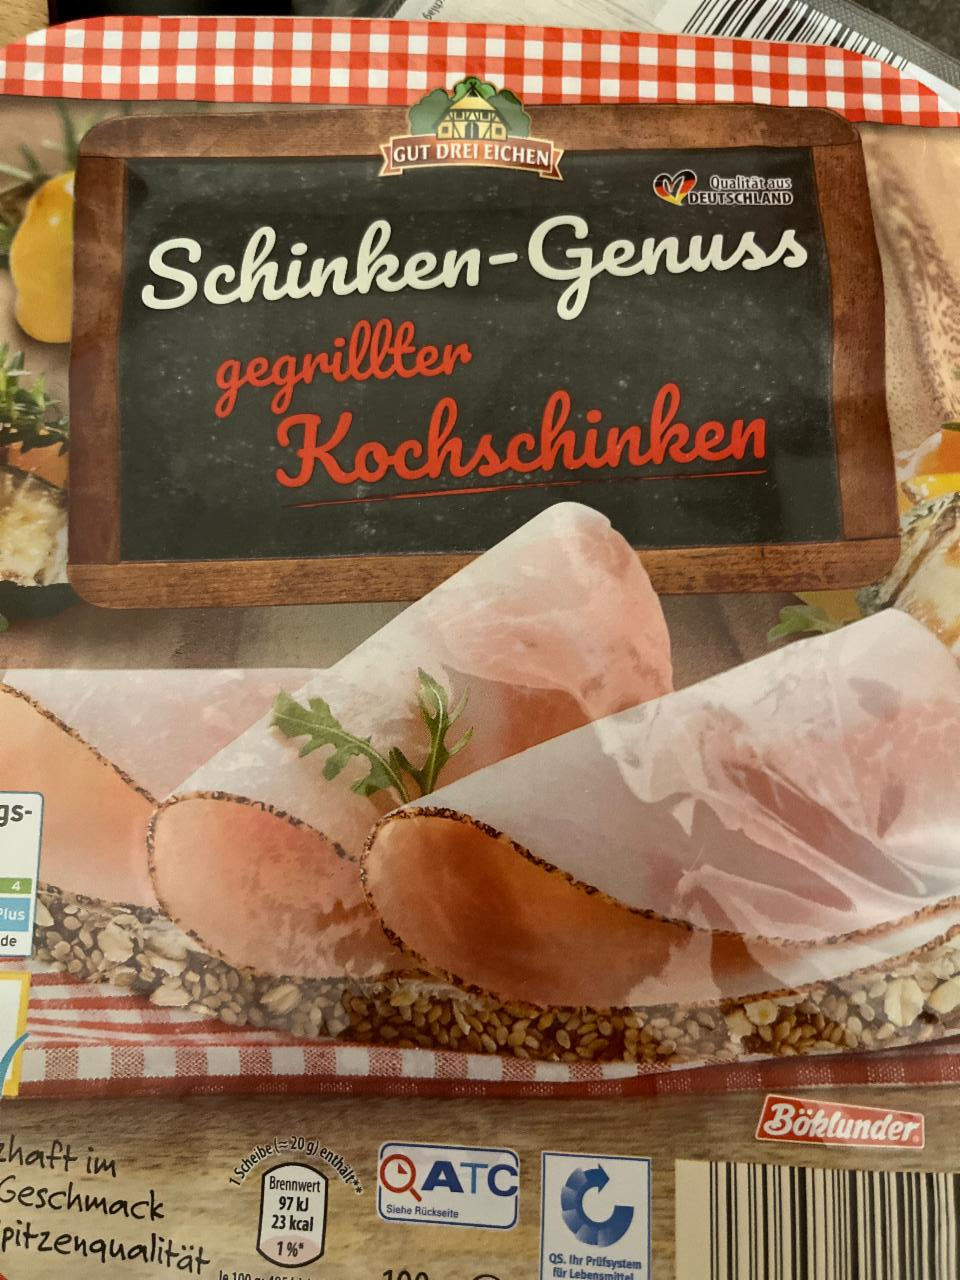 Fotografie - Schinken-Genuss gegrillter Kochschinken Gut drei Eichen